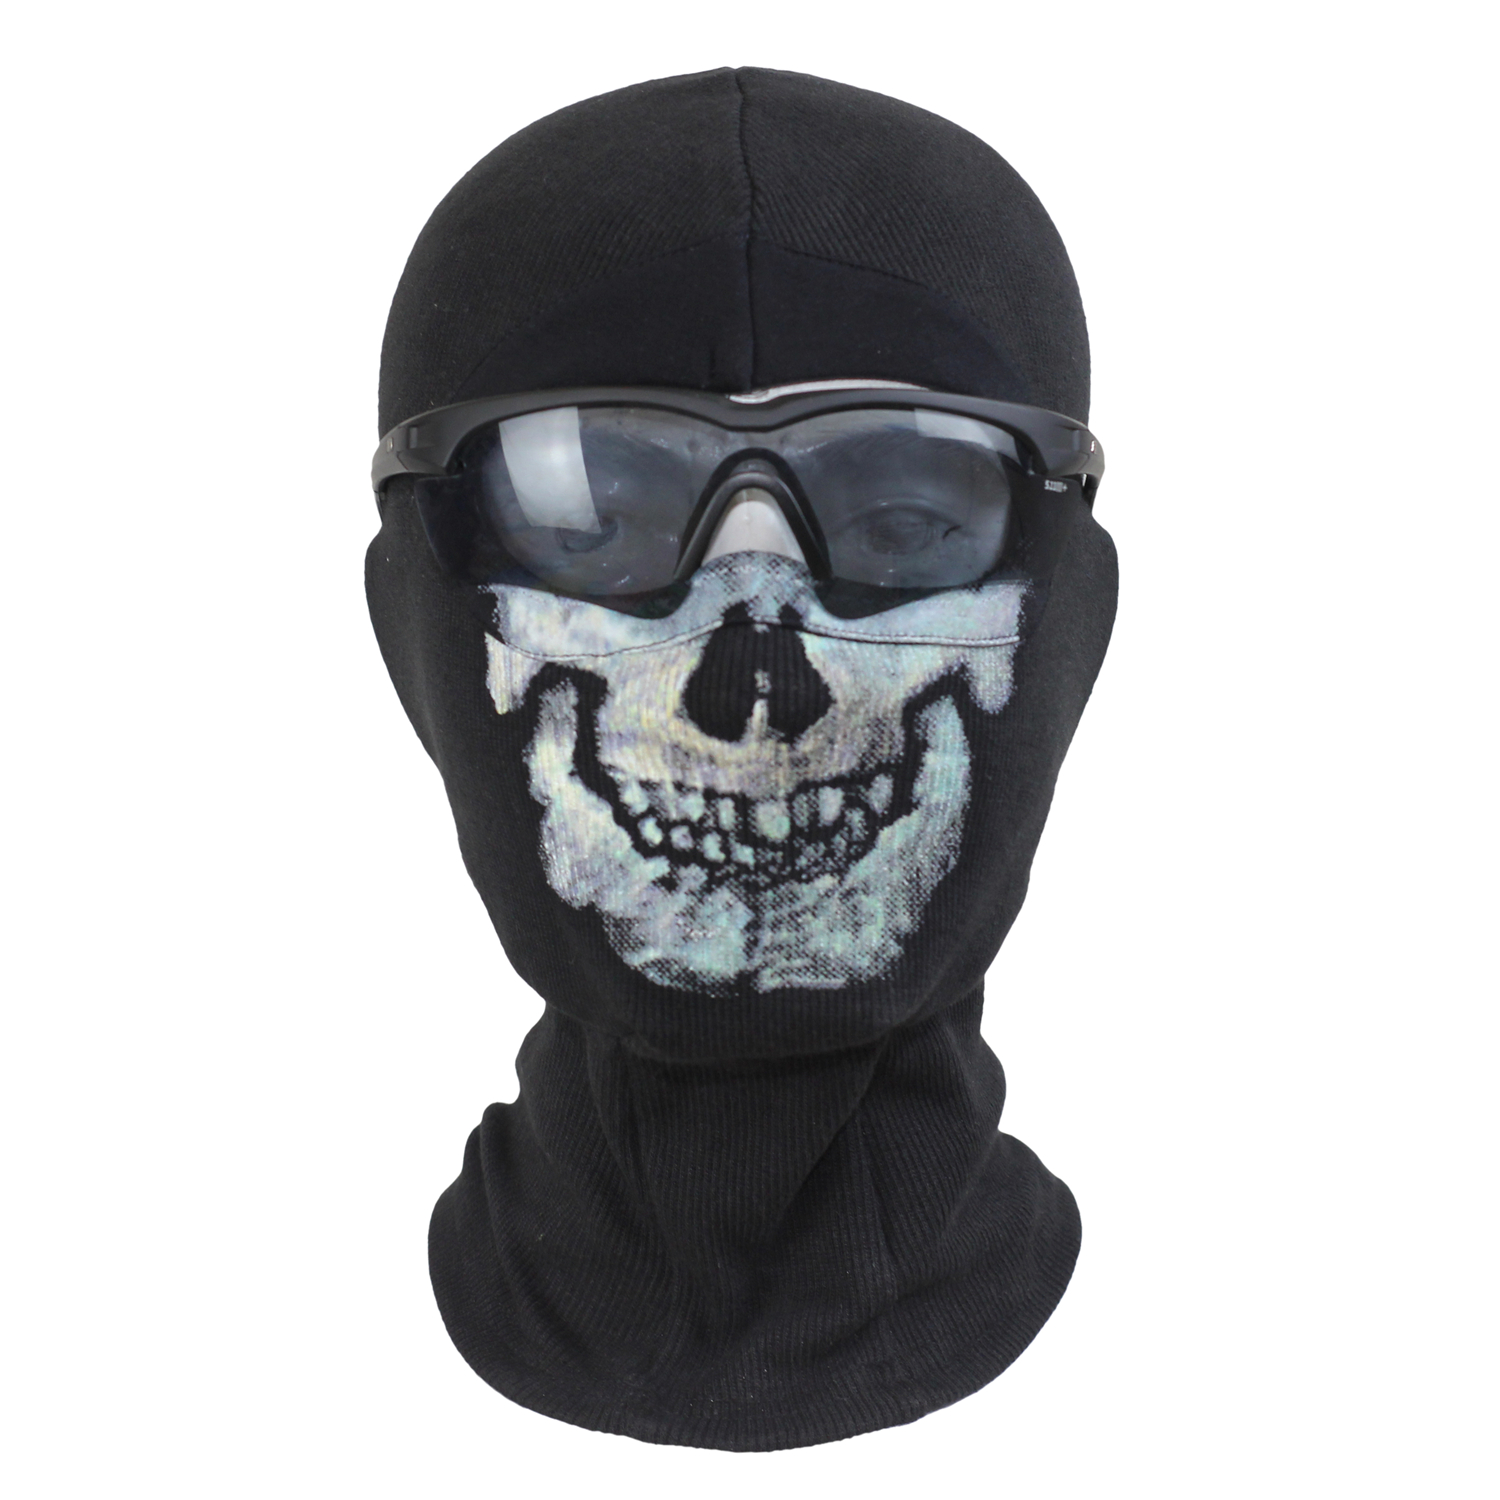 Modern Warfare 2 Ghost mask 